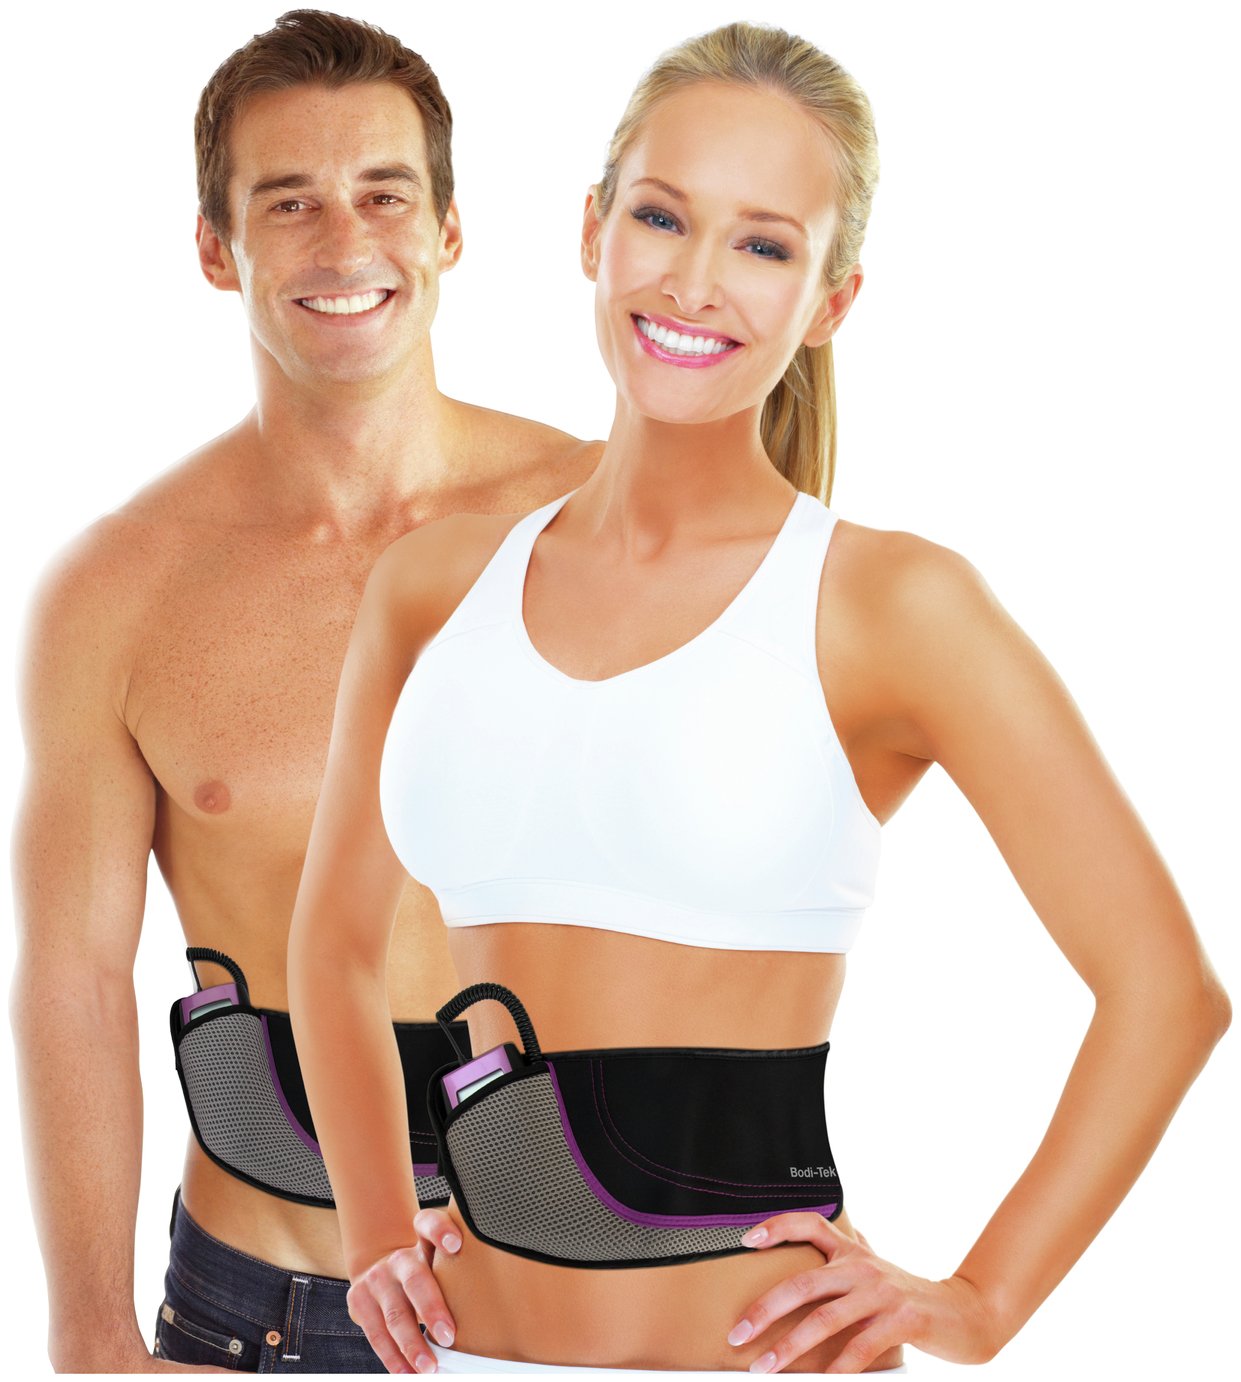 Bodi-Tek Ab Toning, Exercising and Firming Belt - Purple